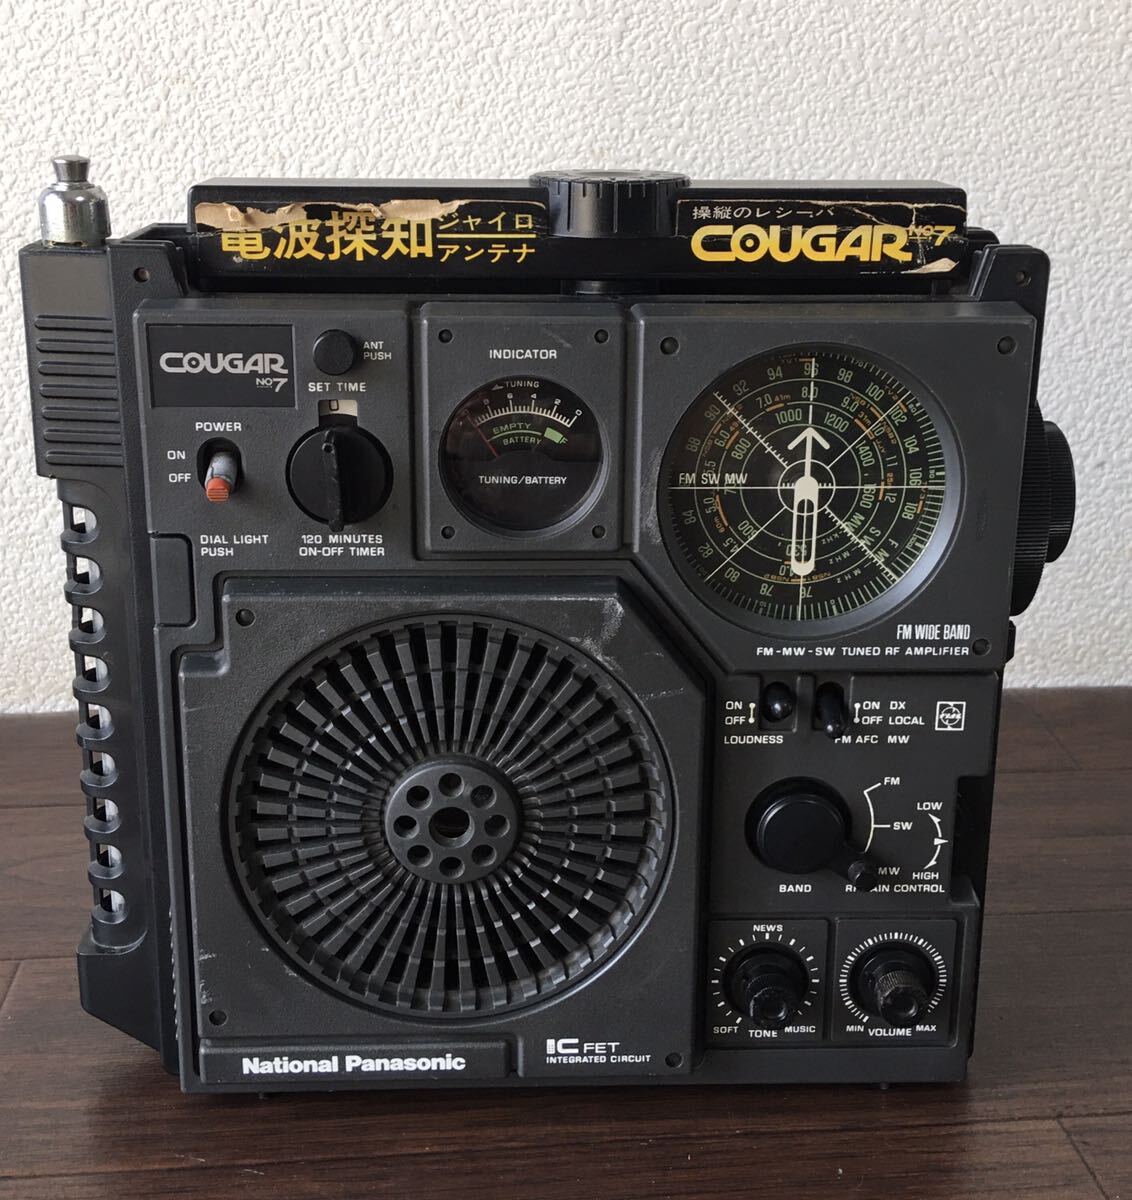 National Panasonic ナショナル パナソニック RF-877 COUGAR No.7 クーガーBCLラジオ 通電確認済み 現状渡し_画像2